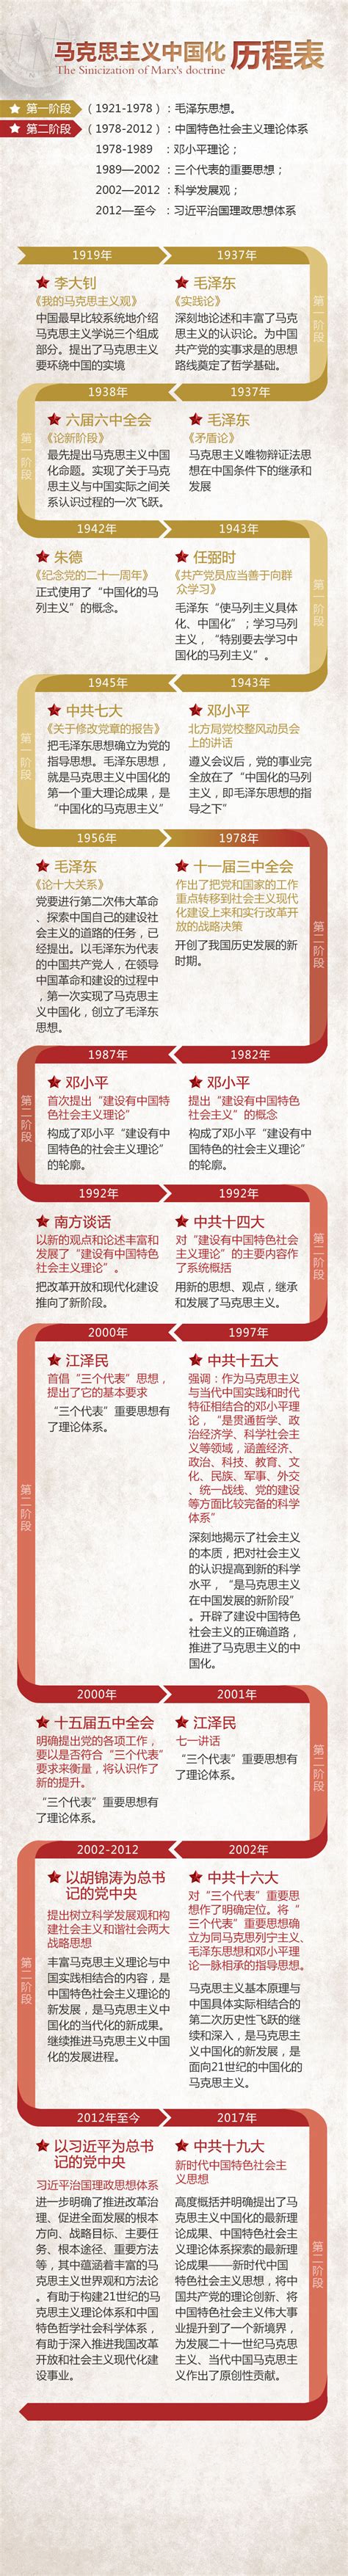 新中国时期的政治建设思维导图一张 - 知乎